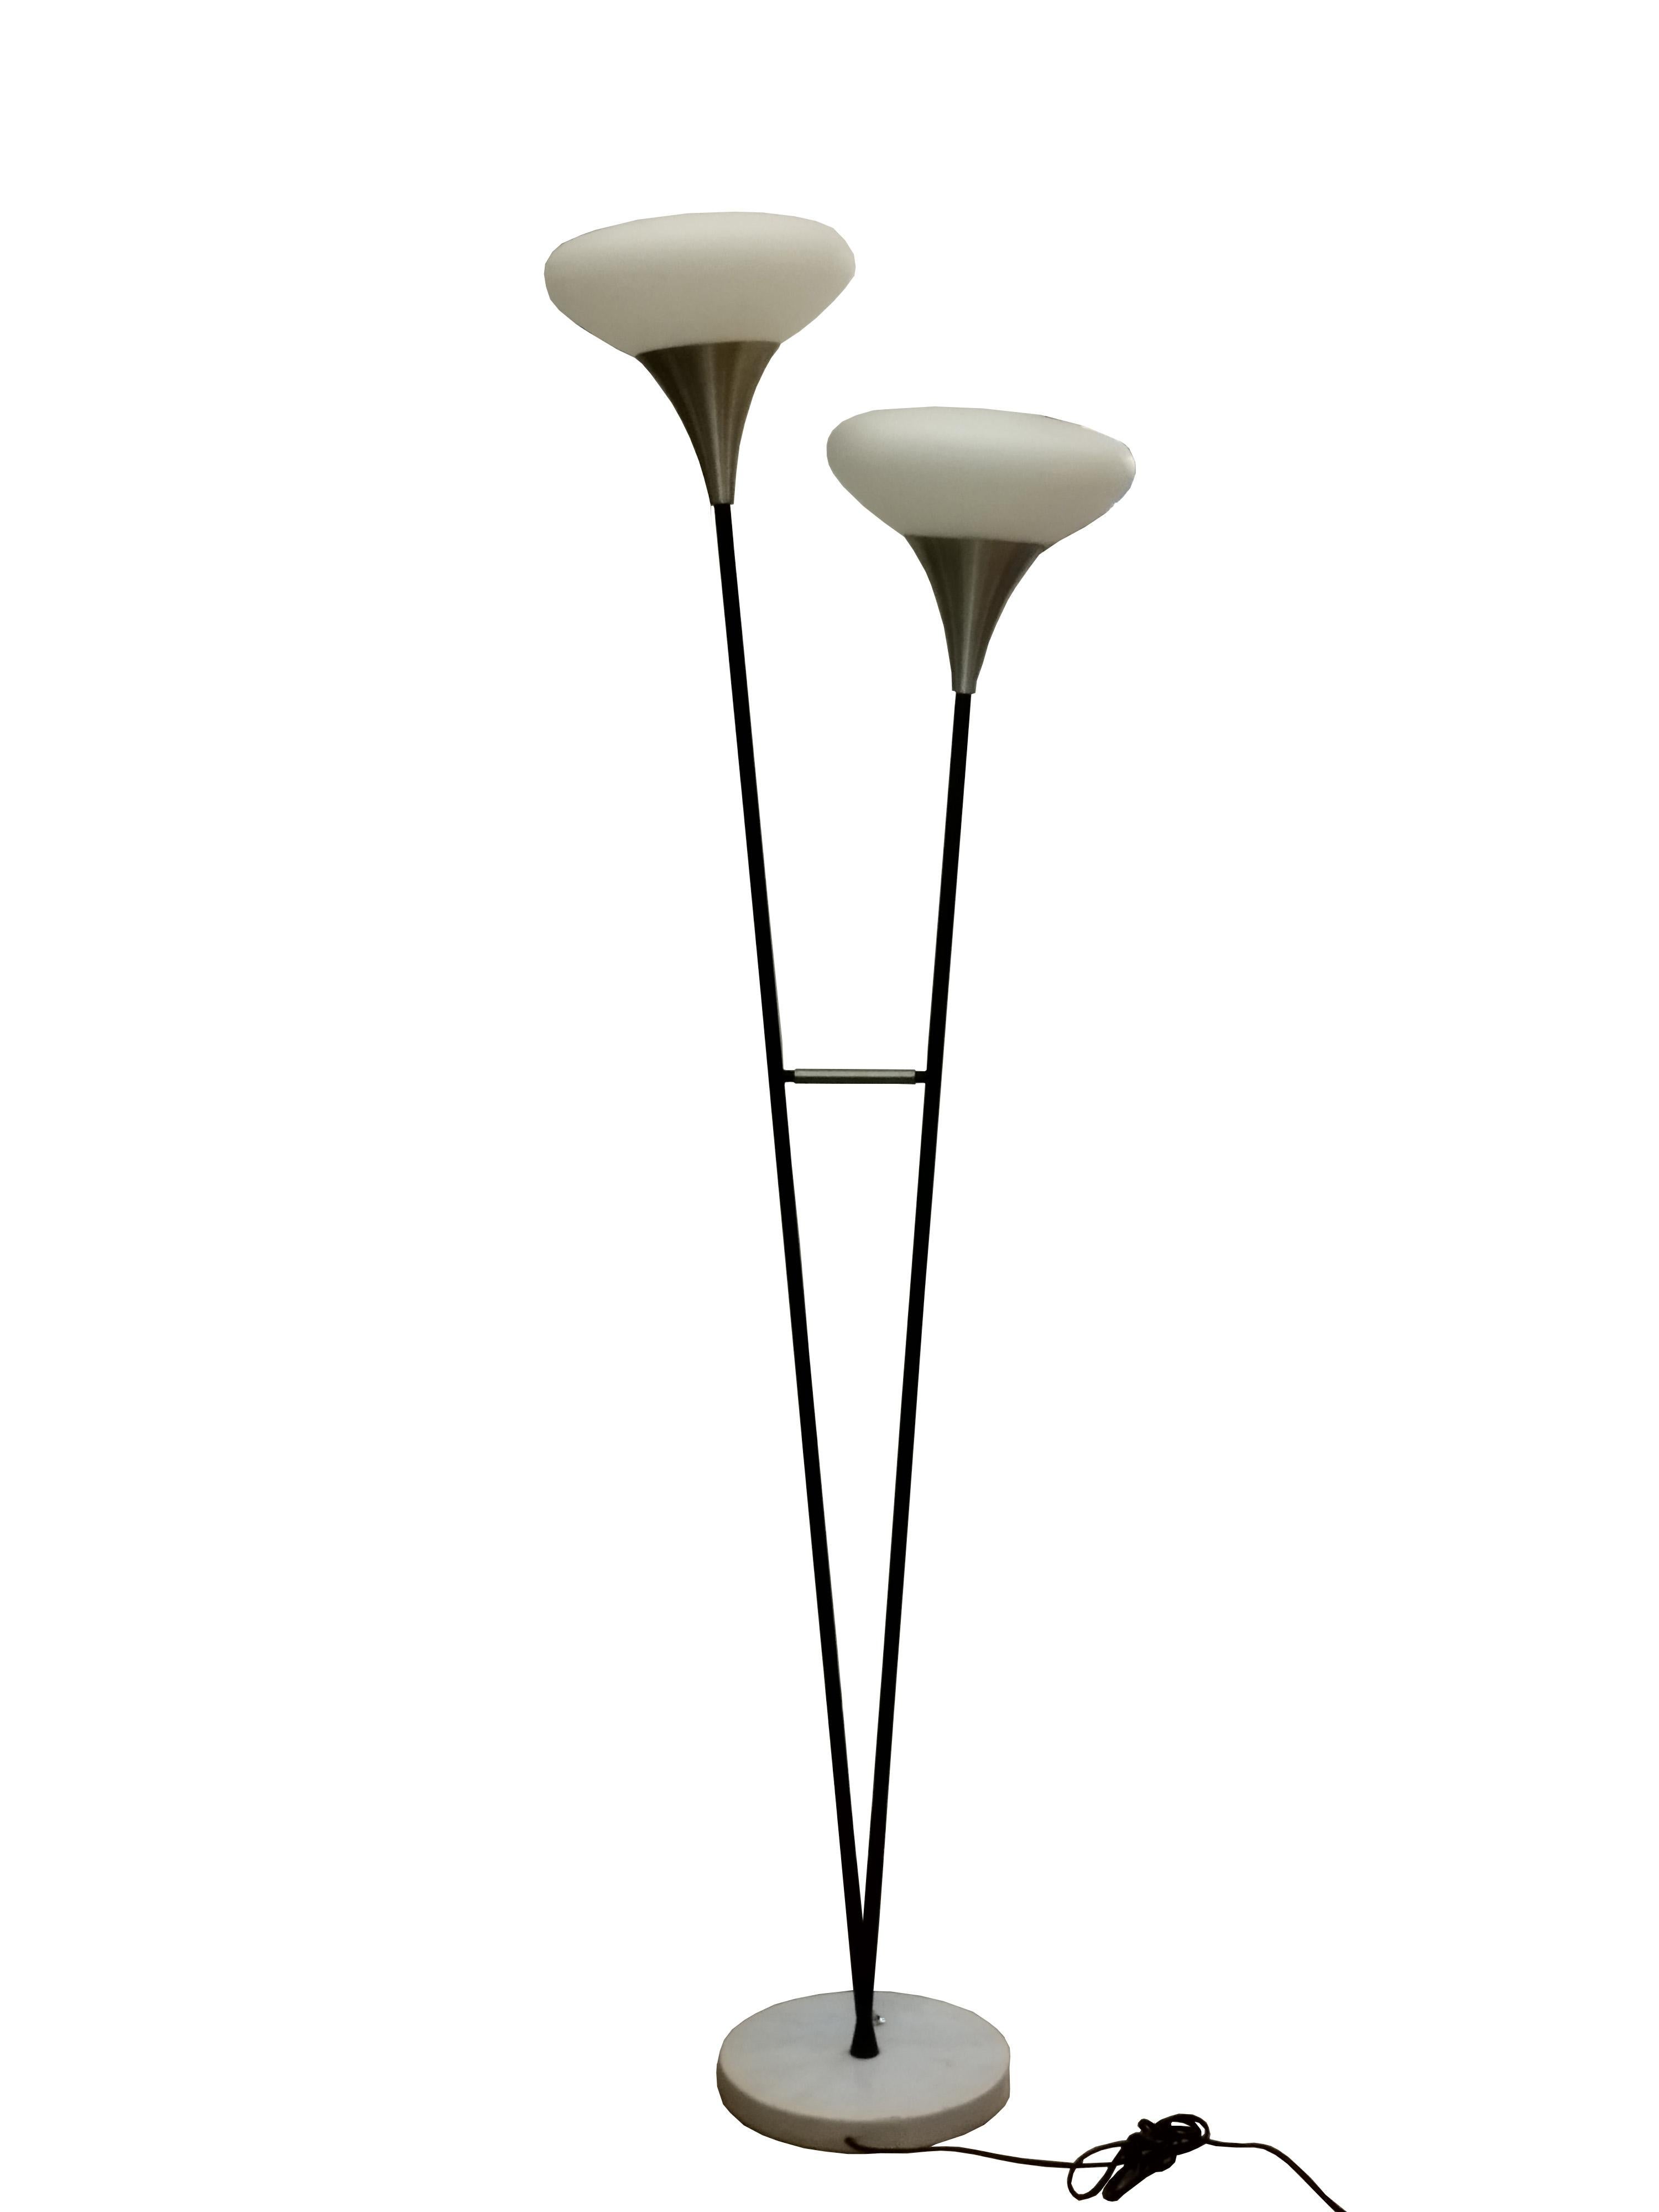 Italienische Stehleuchte, hergestellt von Stilnovo in den 1950er Jahren.
Mit zwei schwarz emaillierten aufrechten Zweigen, jeder mit einem weißen sandgestrahlten Opalglasschirm auf einem Marmorsockel.
